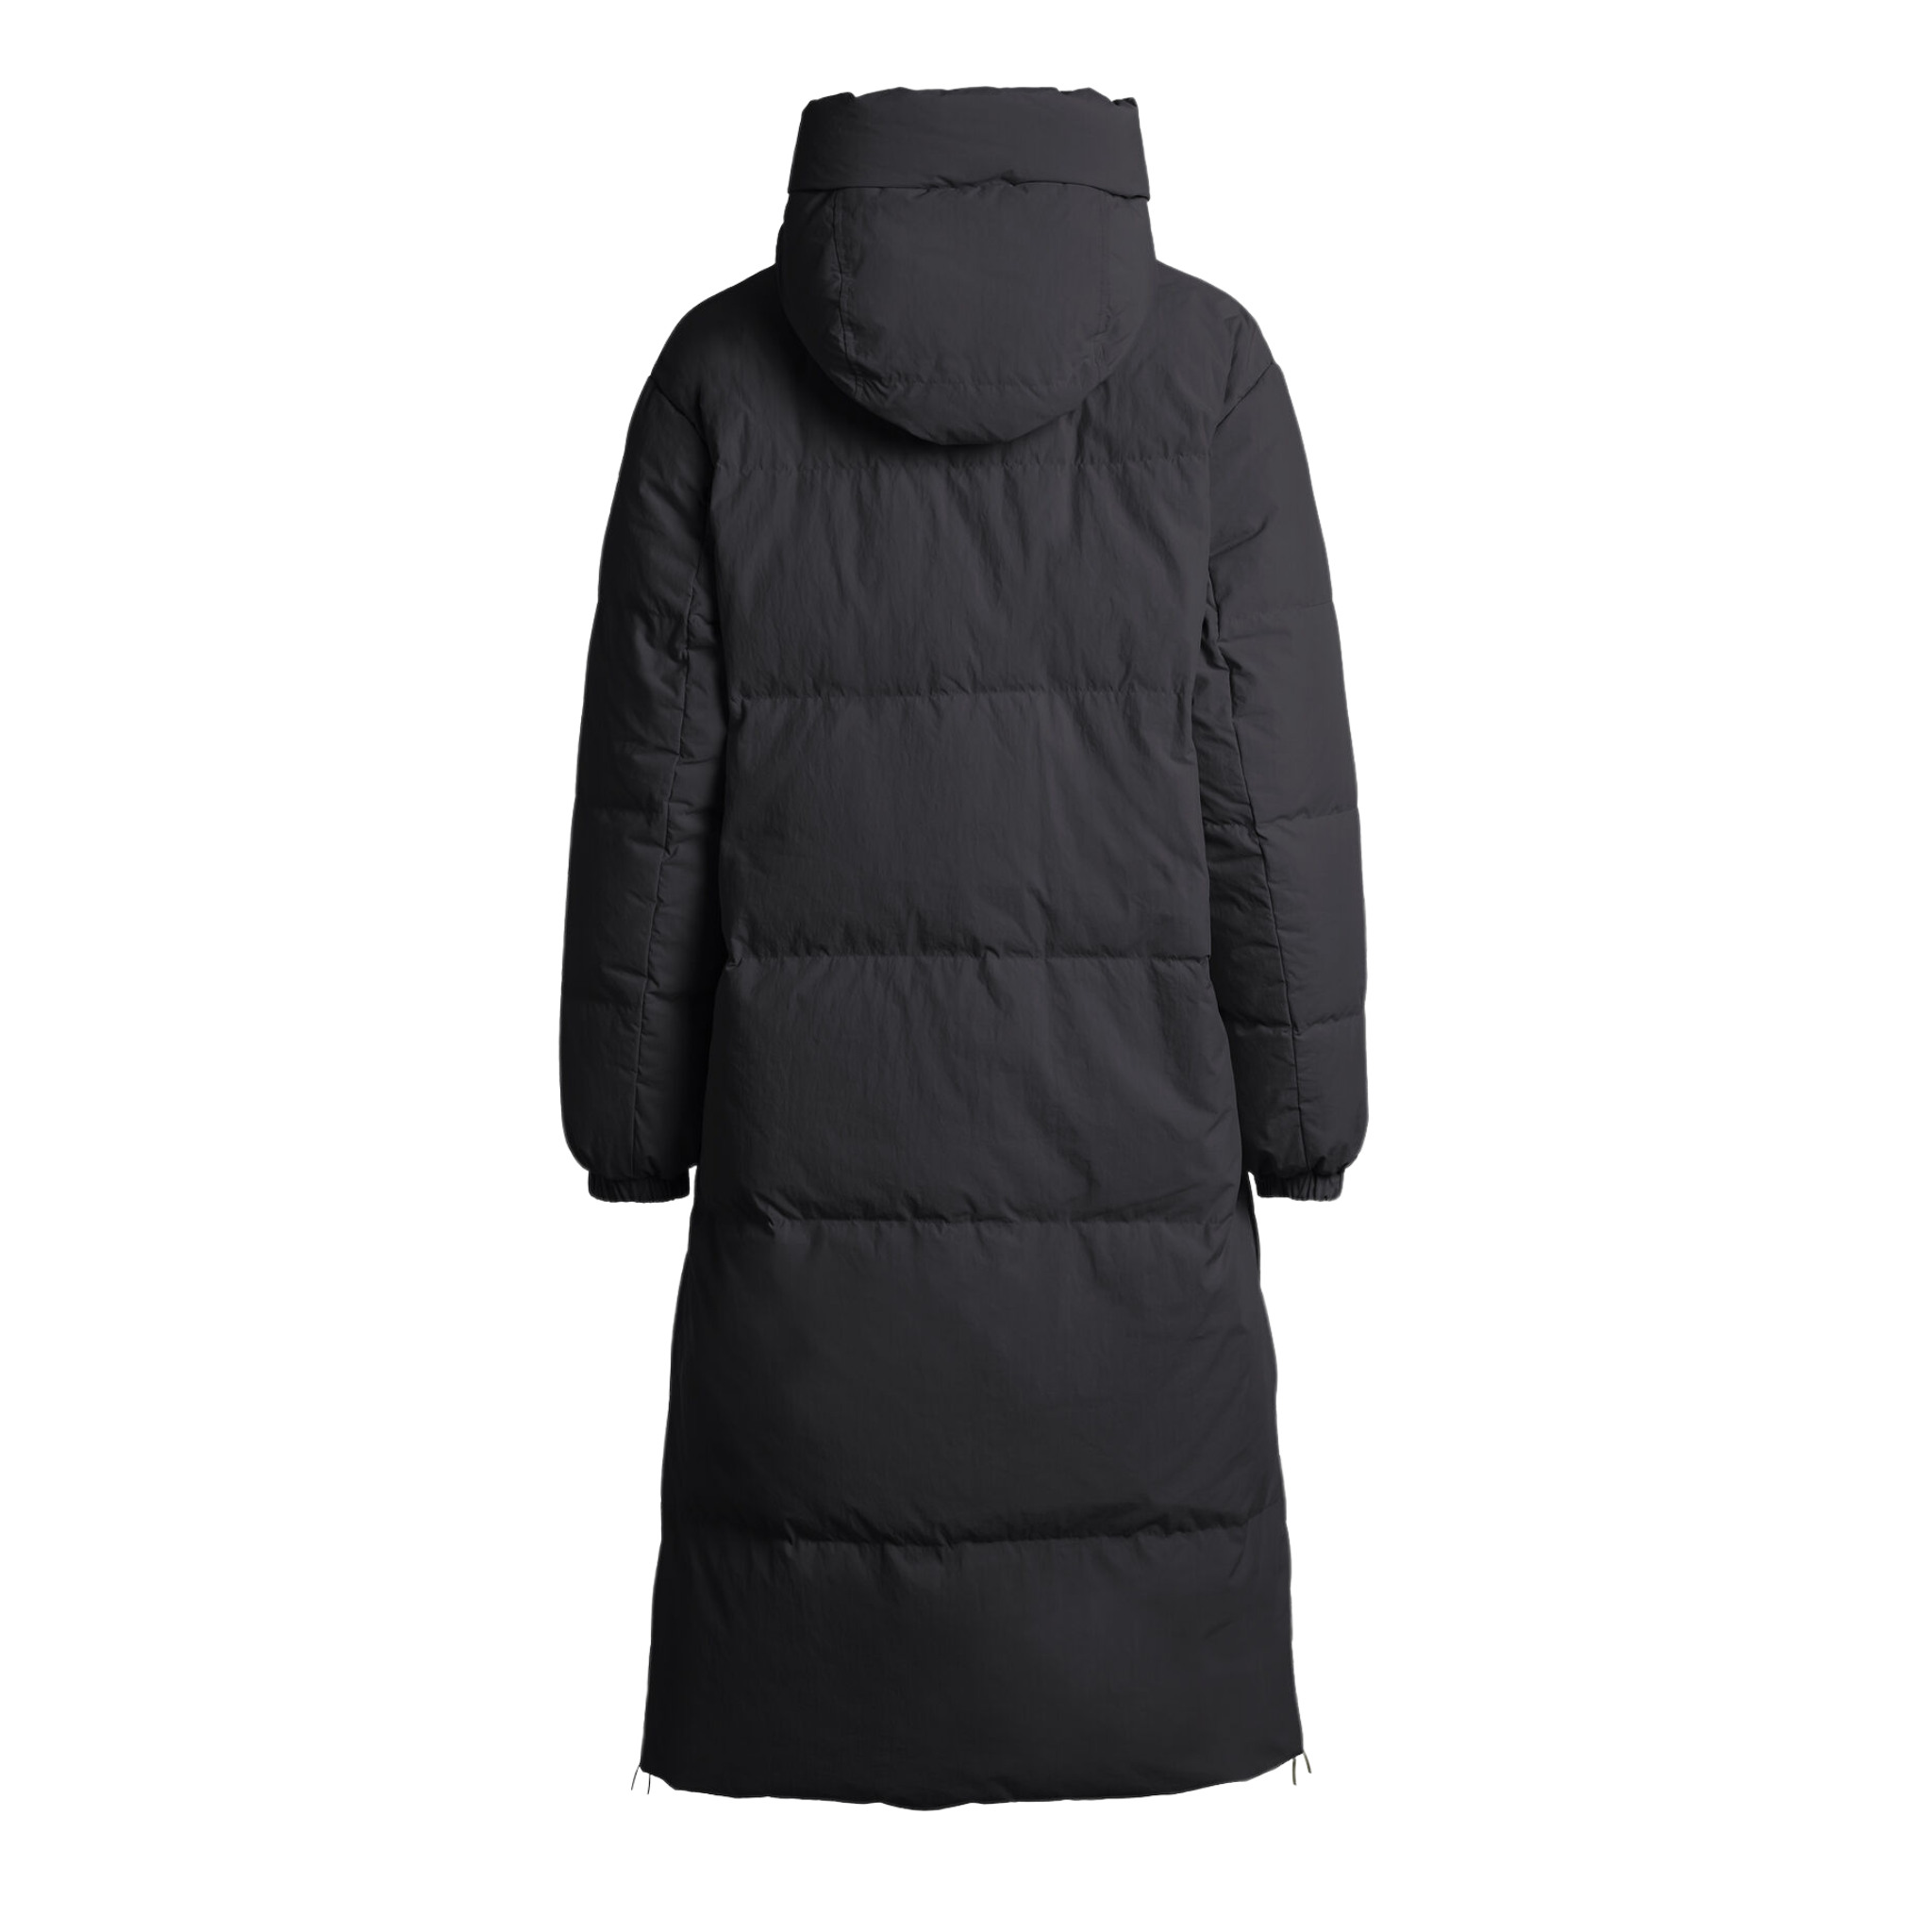 Sleeping Reversible Long Puffer Coat In Black & Beige